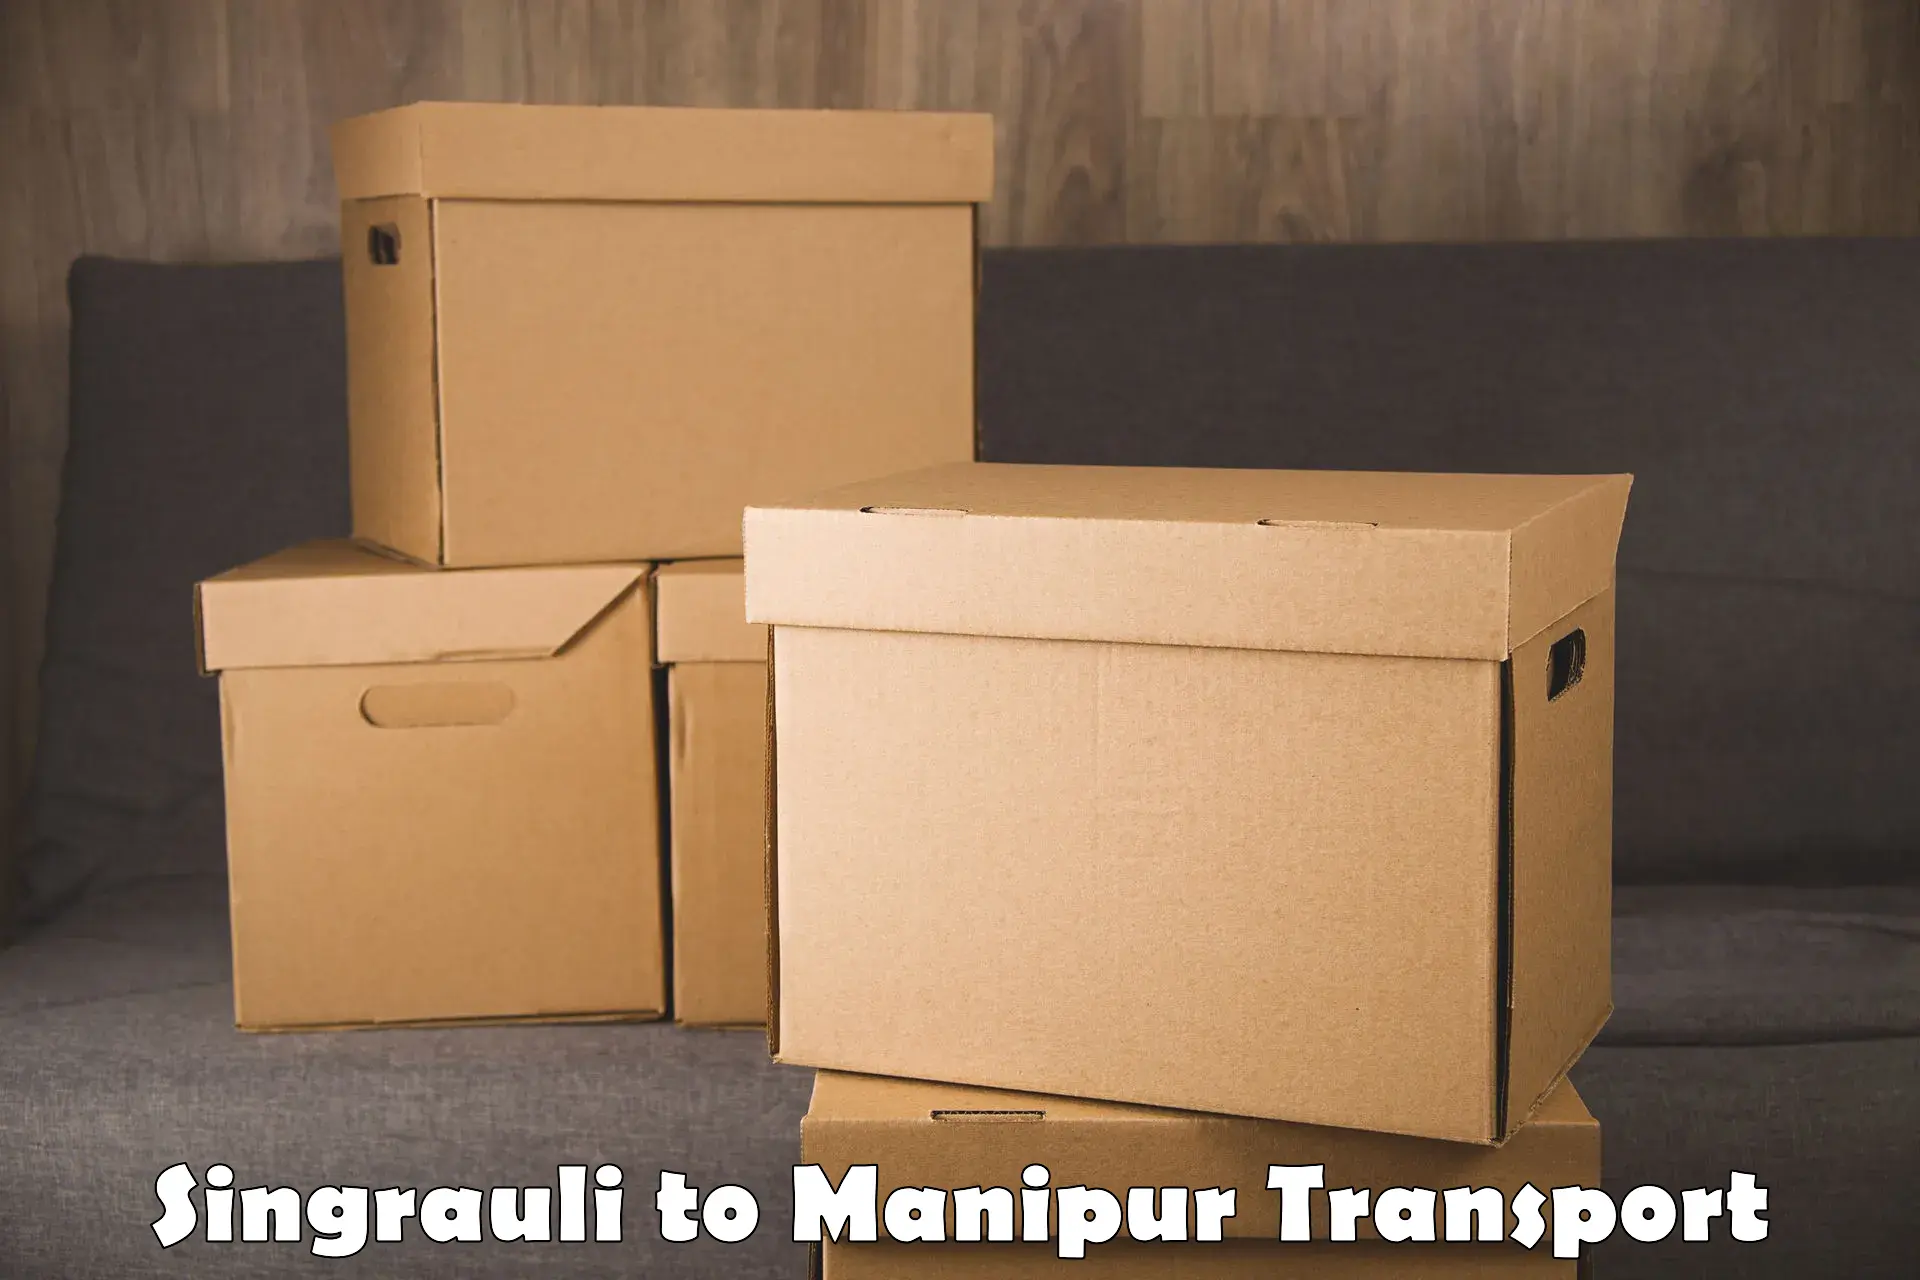 Furniture transport service Singrauli to Manipur